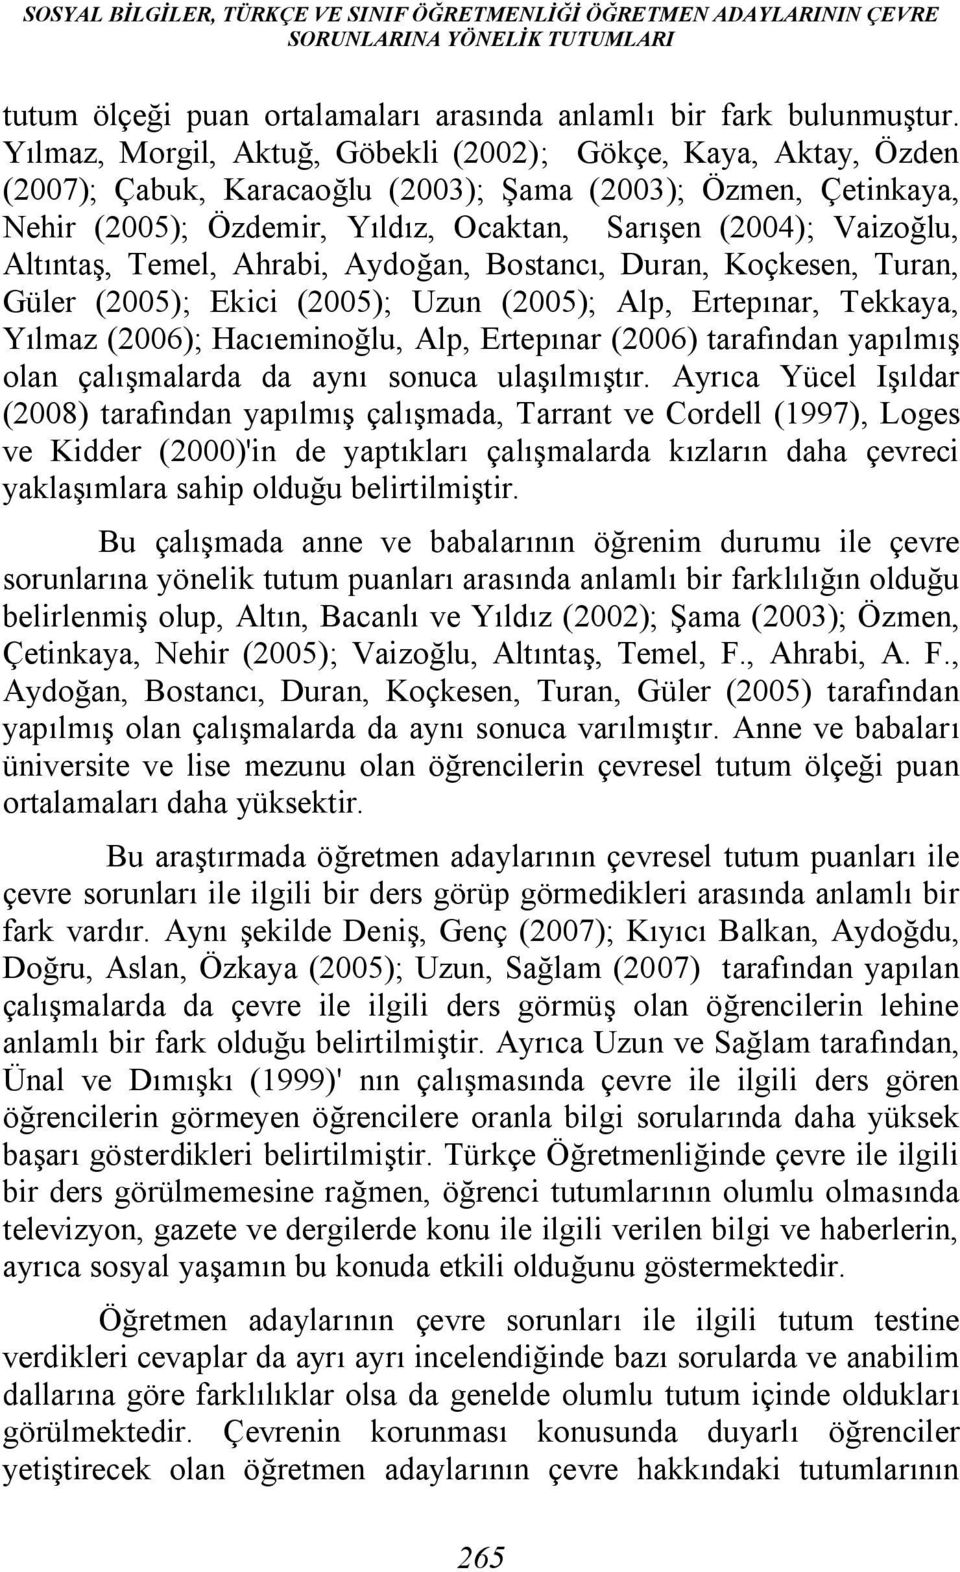 Altıntaş, Temel, Ahrabi, Aydoğan, Bostancı, Duran, Koçkesen, Turan, Güler (2005); Ekici (2005); Uzun (2005); Alp, Ertepınar, Tekkaya, Yılmaz (2006); Hacıeminoğlu, Alp, Ertepınar (2006) tarafından